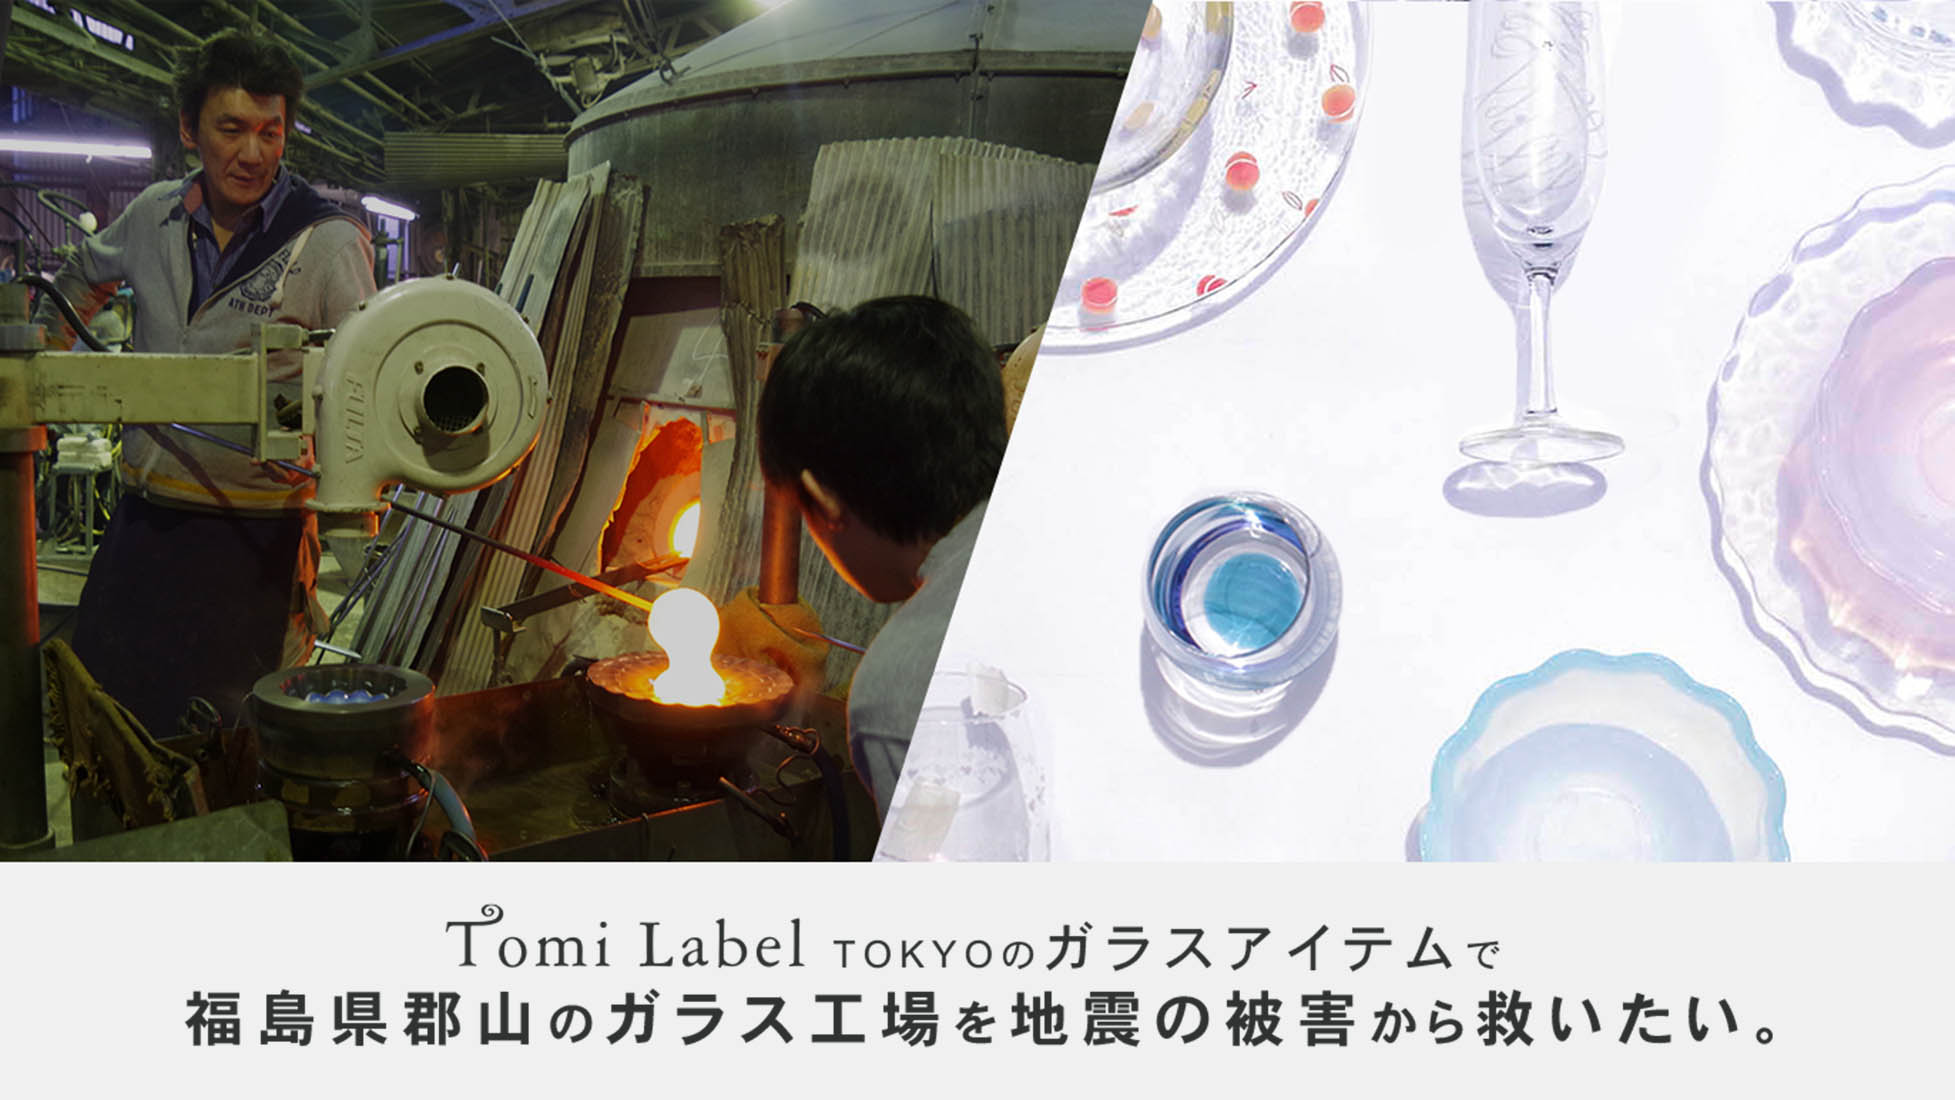 食器を買って被災した福島県のガラス工場に支援を。5月19日クラウドファンディング開始